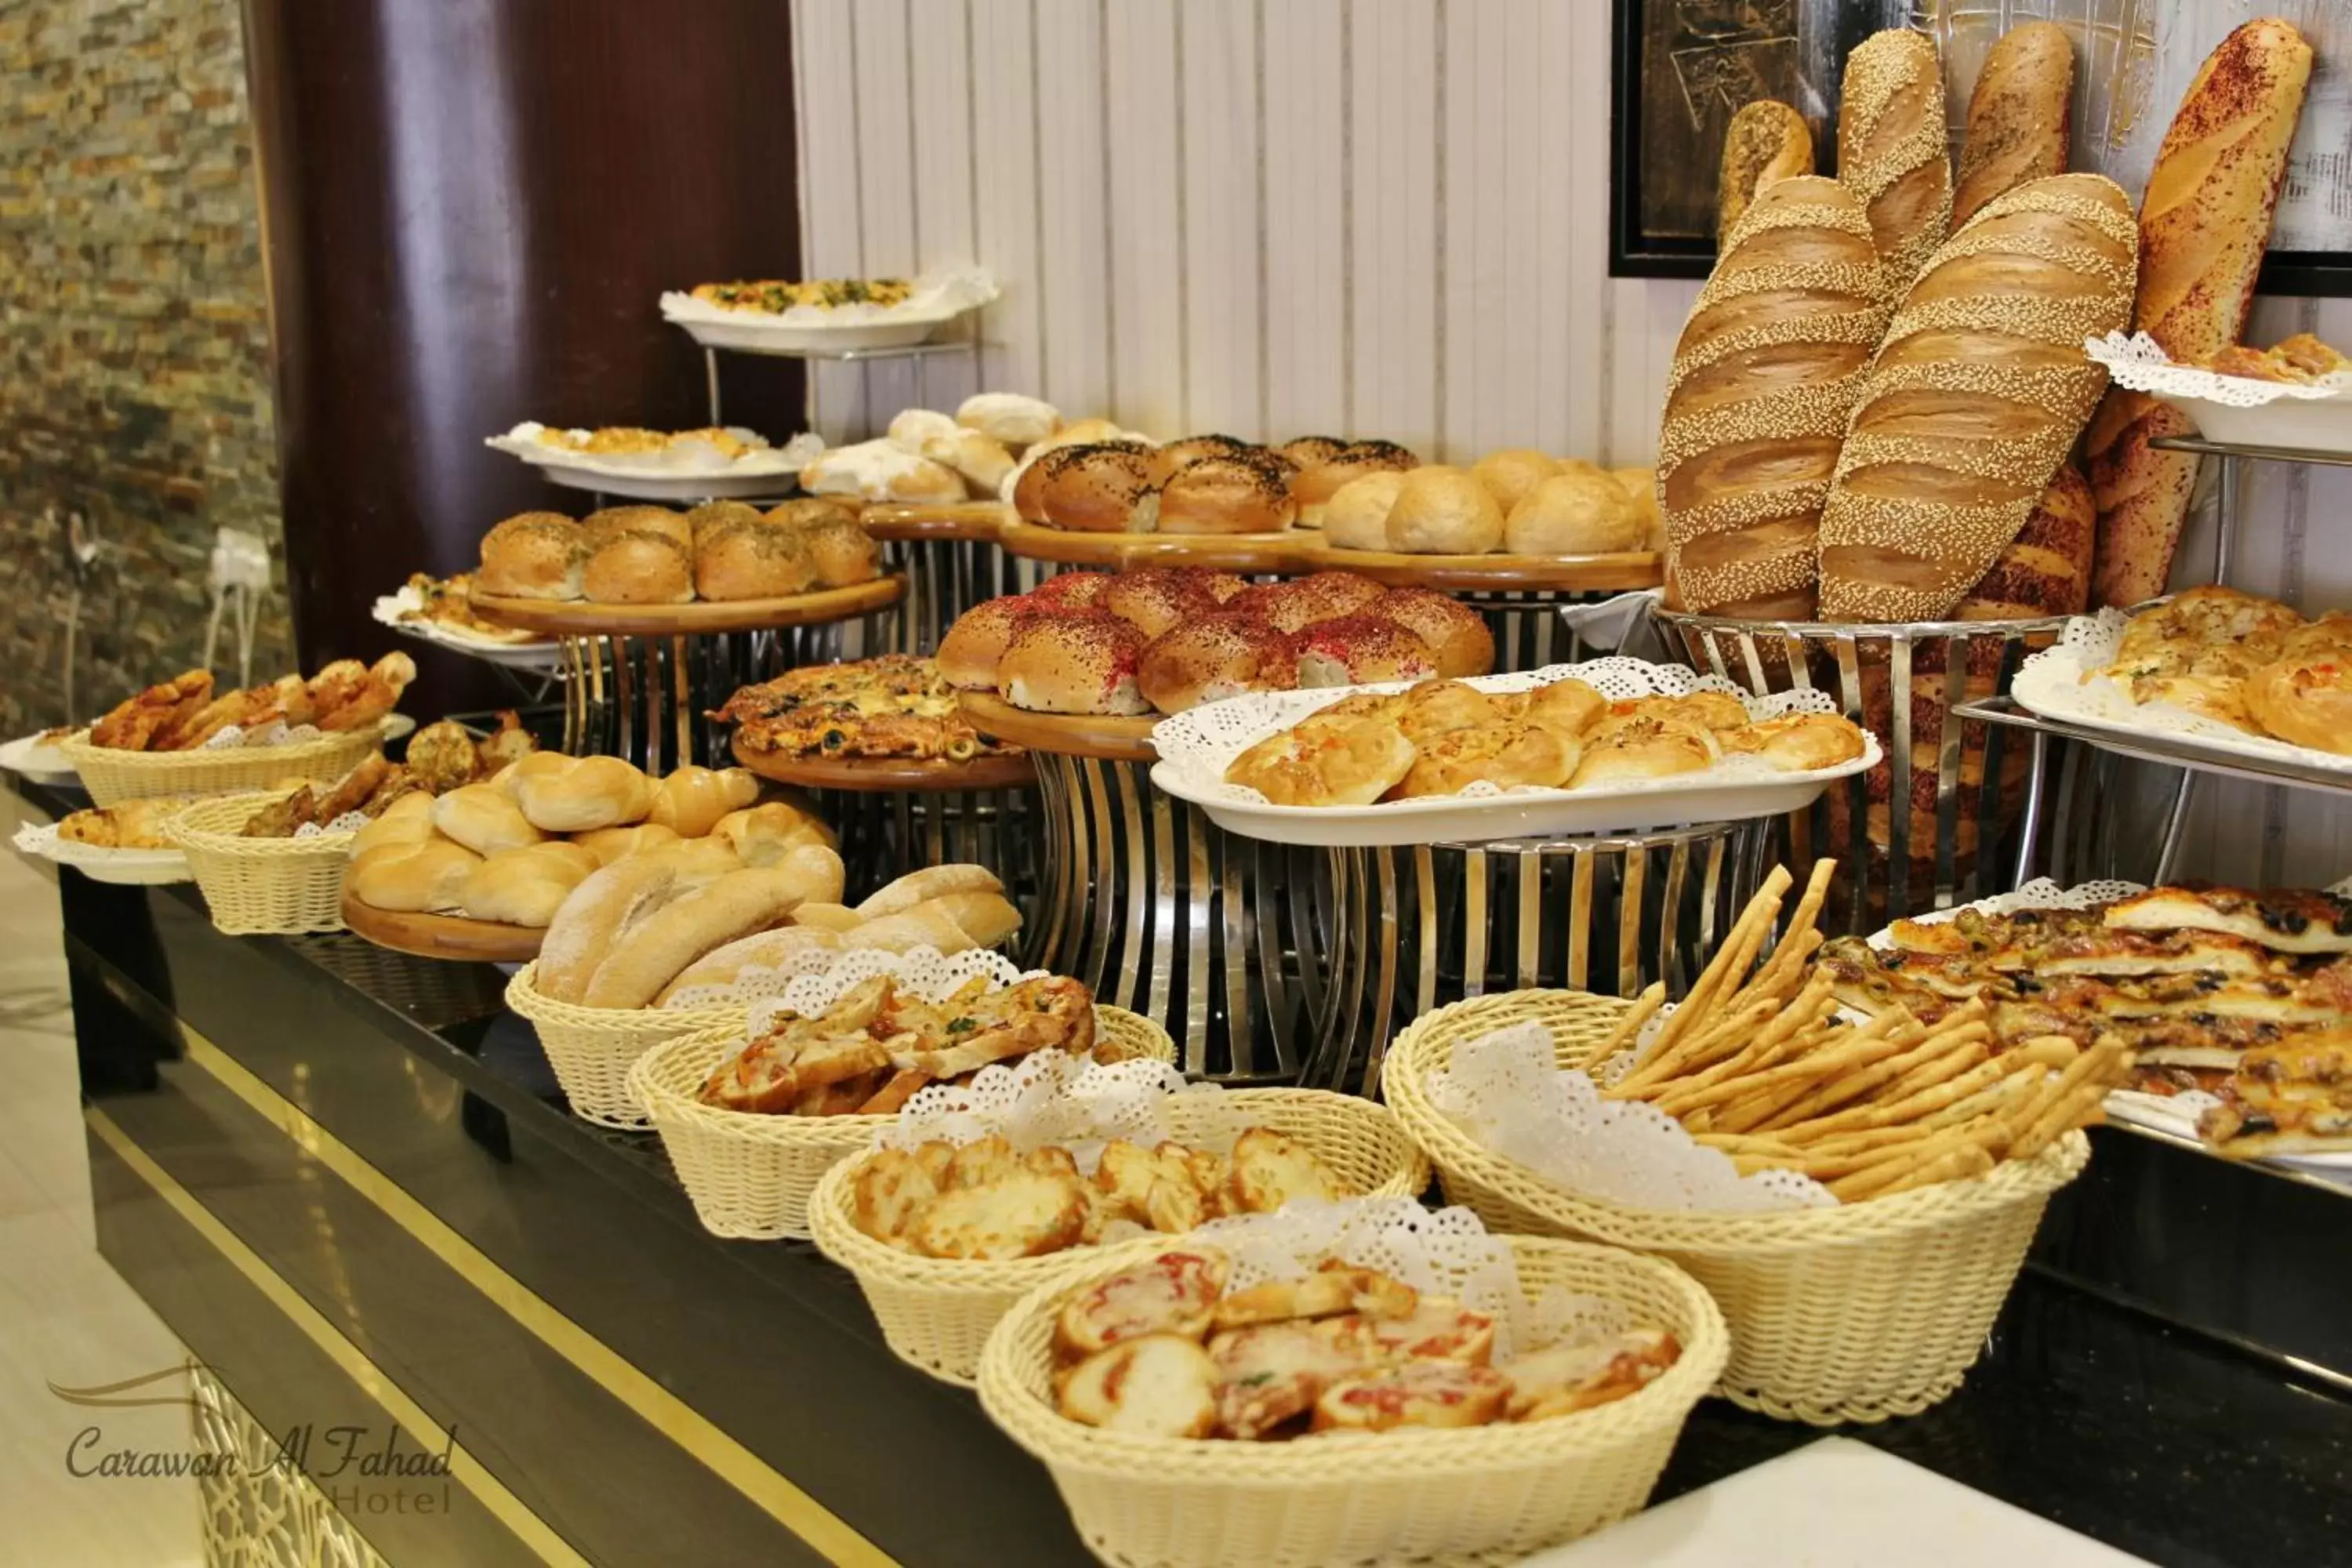 Food and drinks in Carawan Al Fahad Hotel